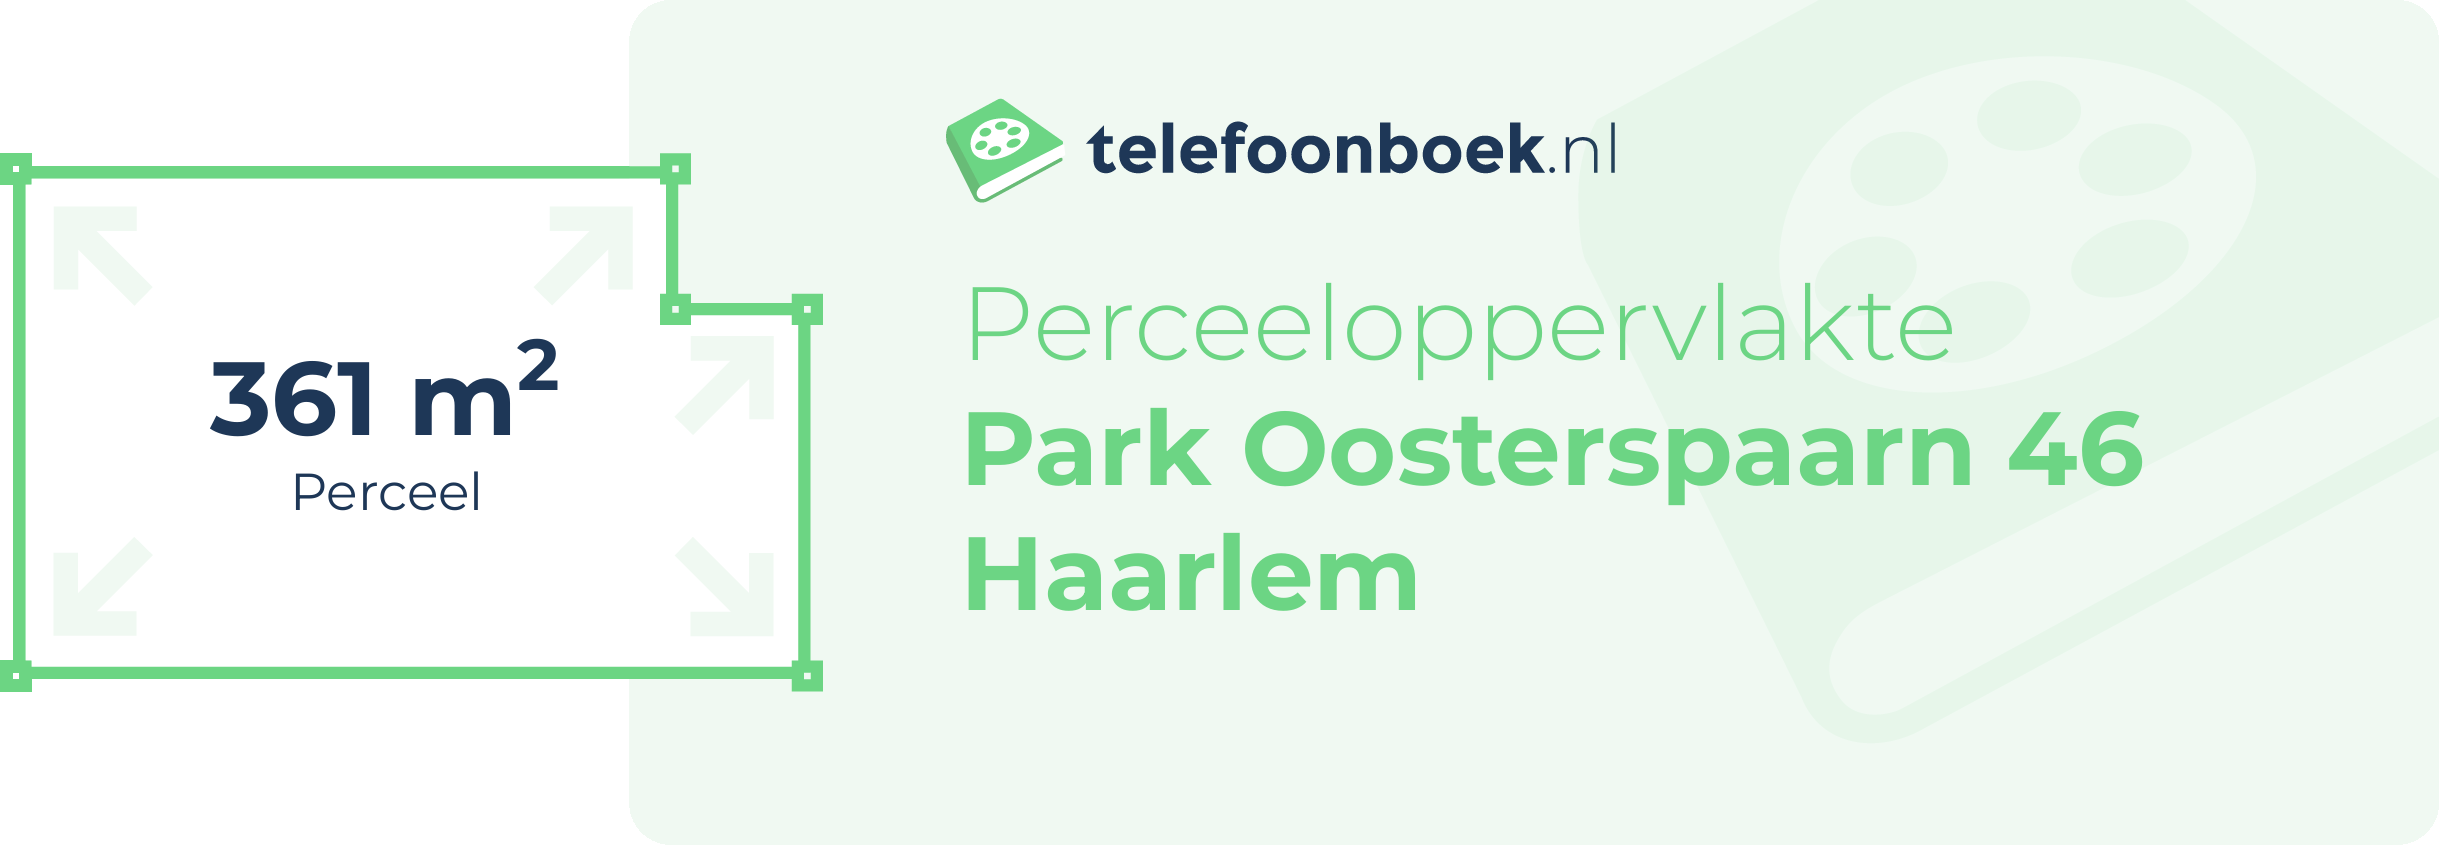 Perceeloppervlakte Park Oosterspaarn 46 Haarlem